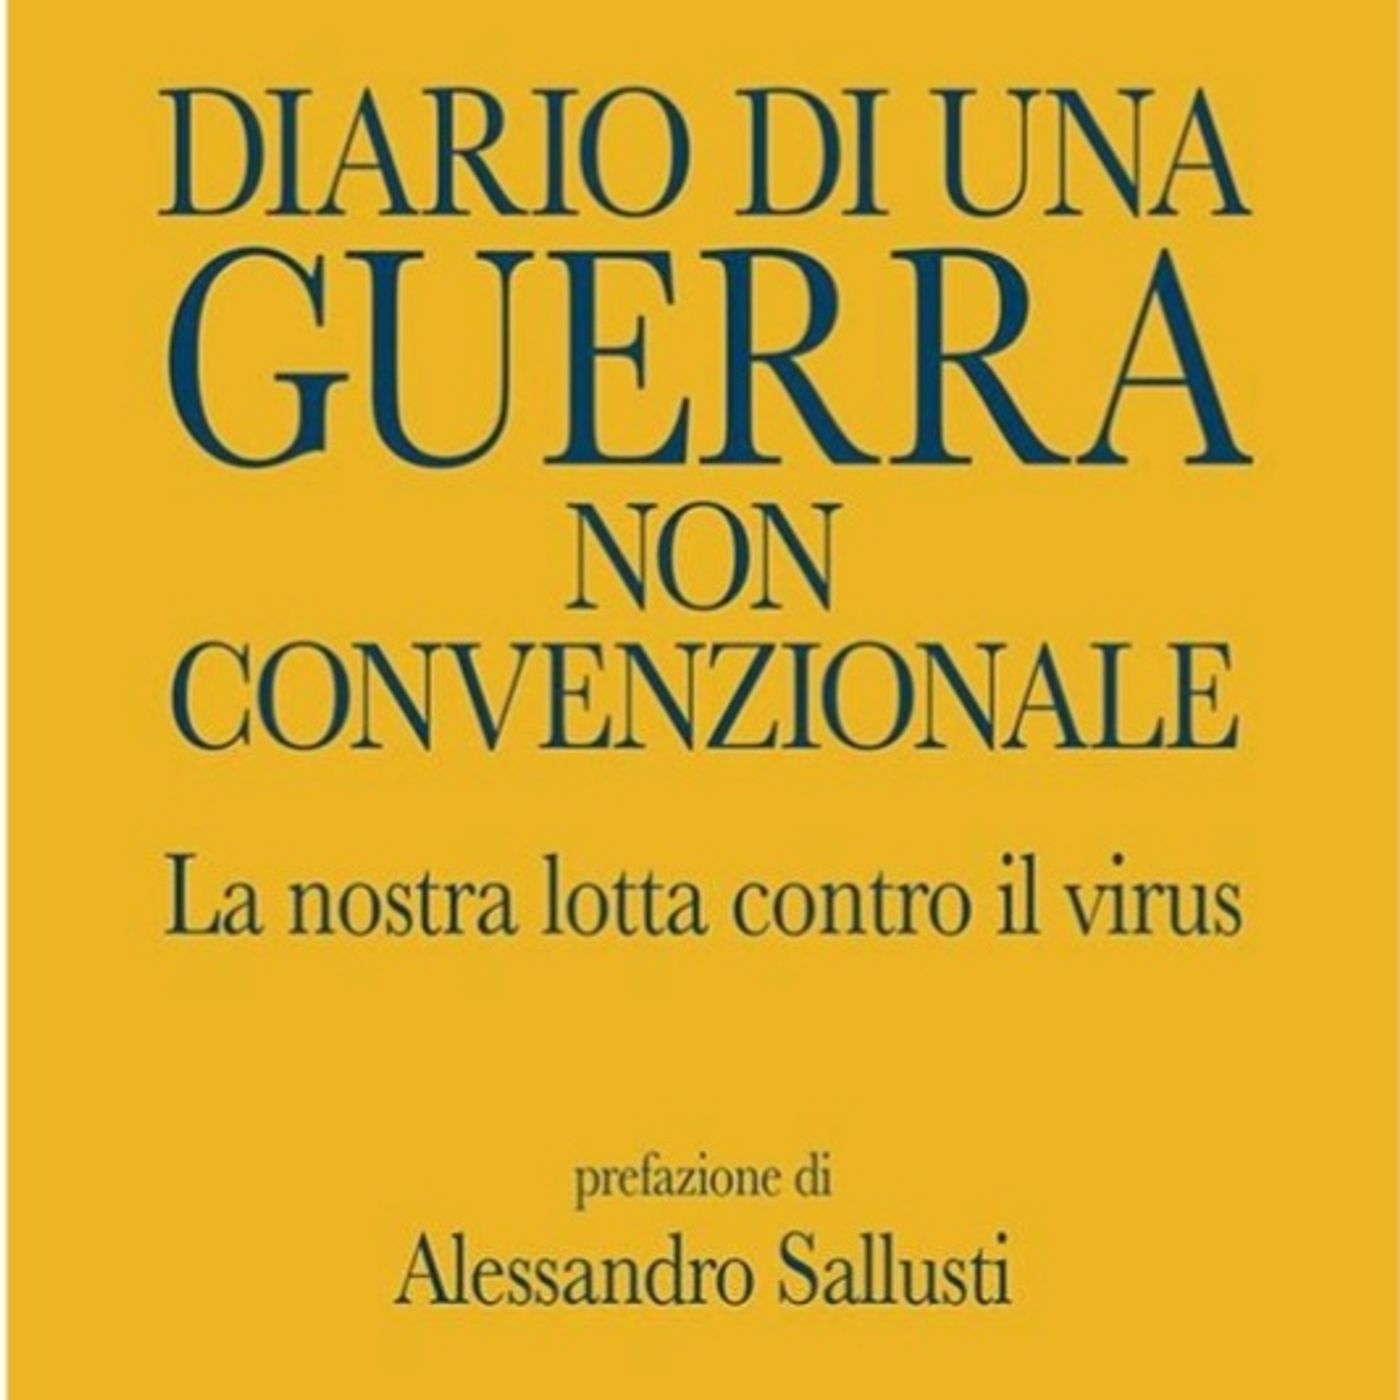 Intervista a Giulio Gallera